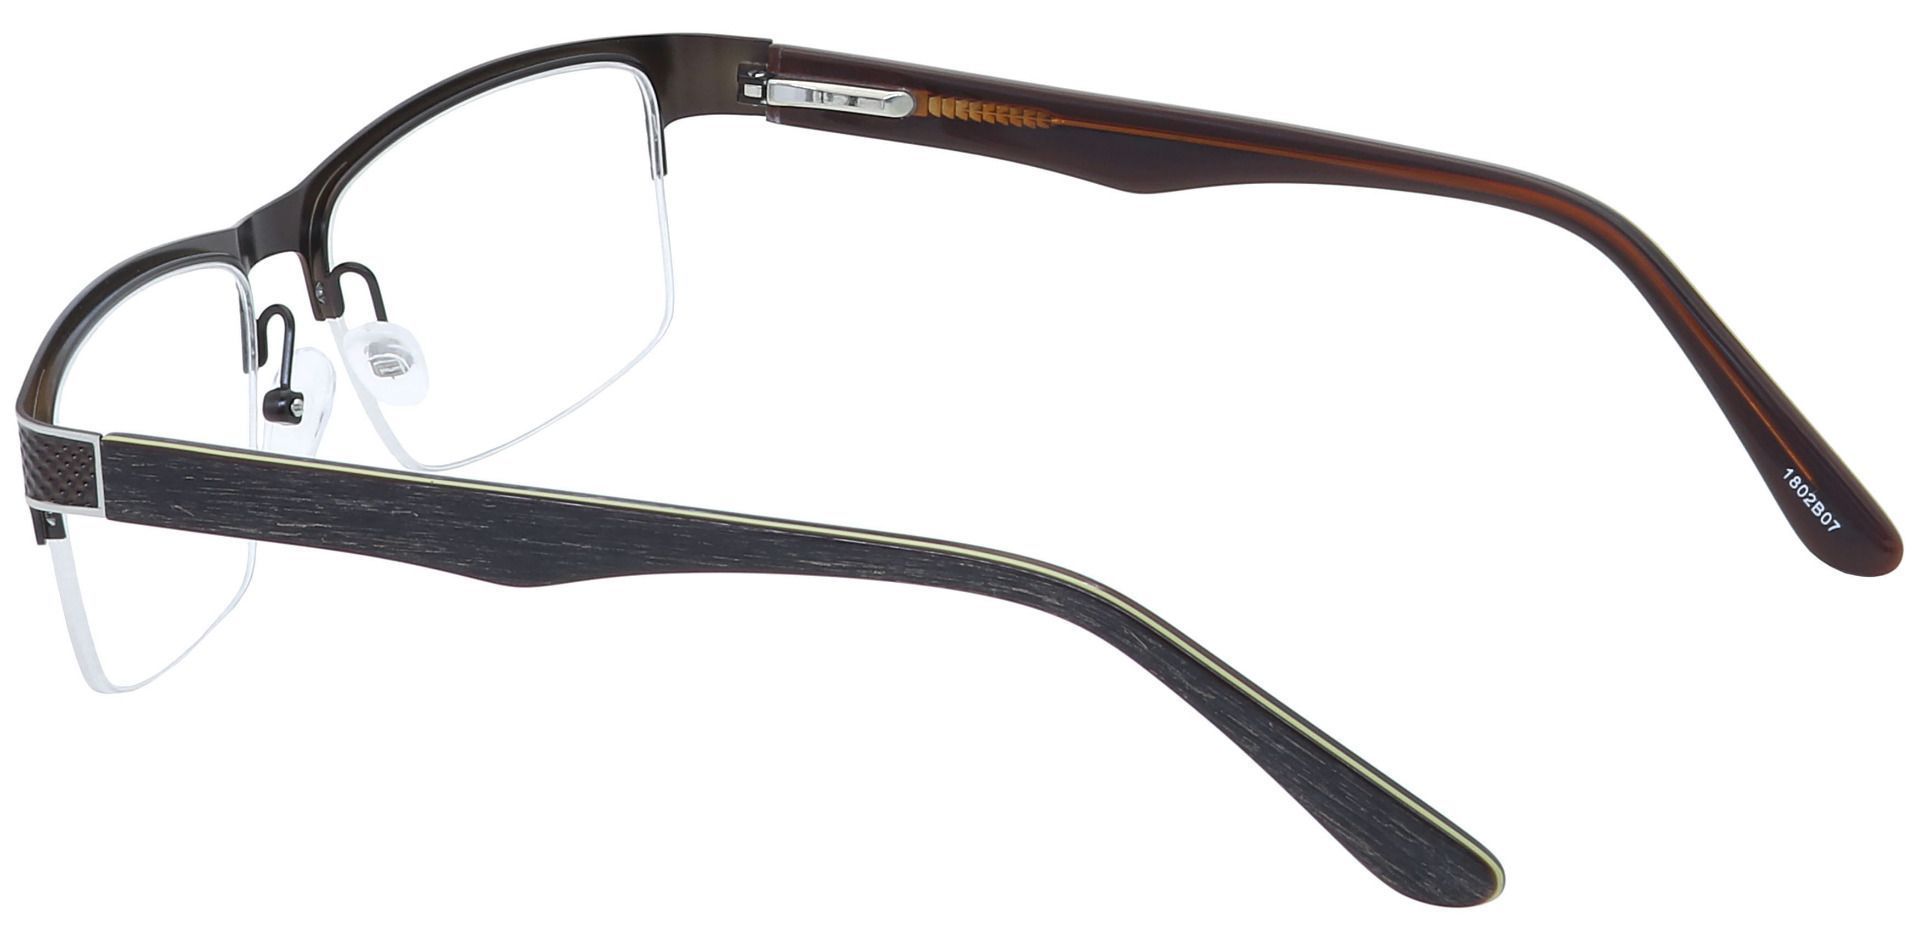 Executive Square Progressive Glasses - Brown